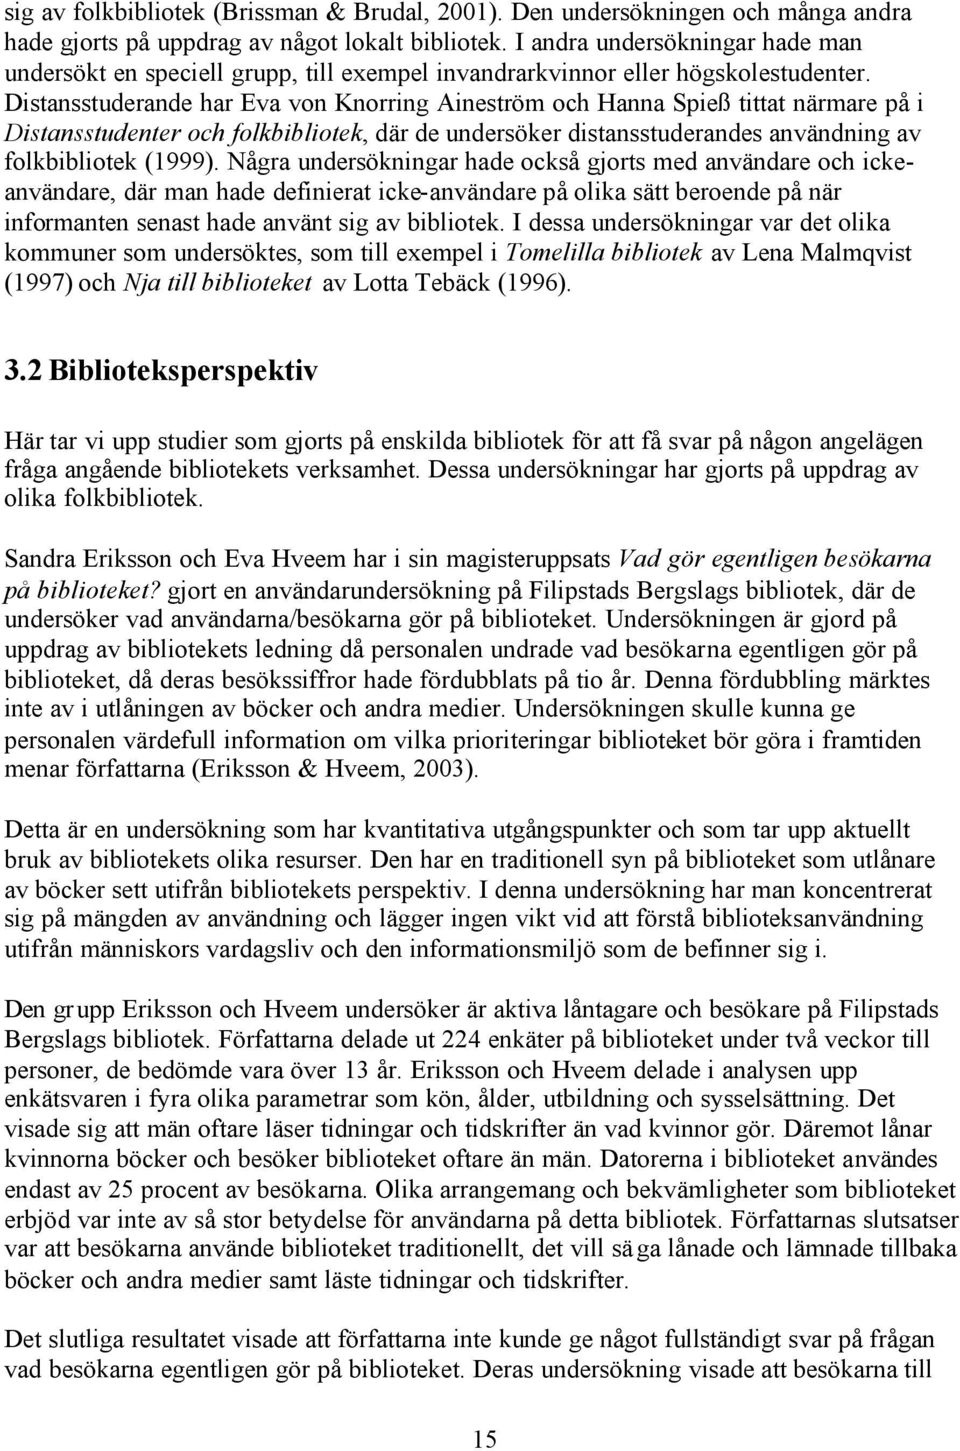 Distansstuderande har Eva von Knorring Aineström och Hanna Spieß tittat närmare på i Distansstudenter och folkbibliotek, där de undersöker distansstuderandes användning av folkbibliotek (1999).